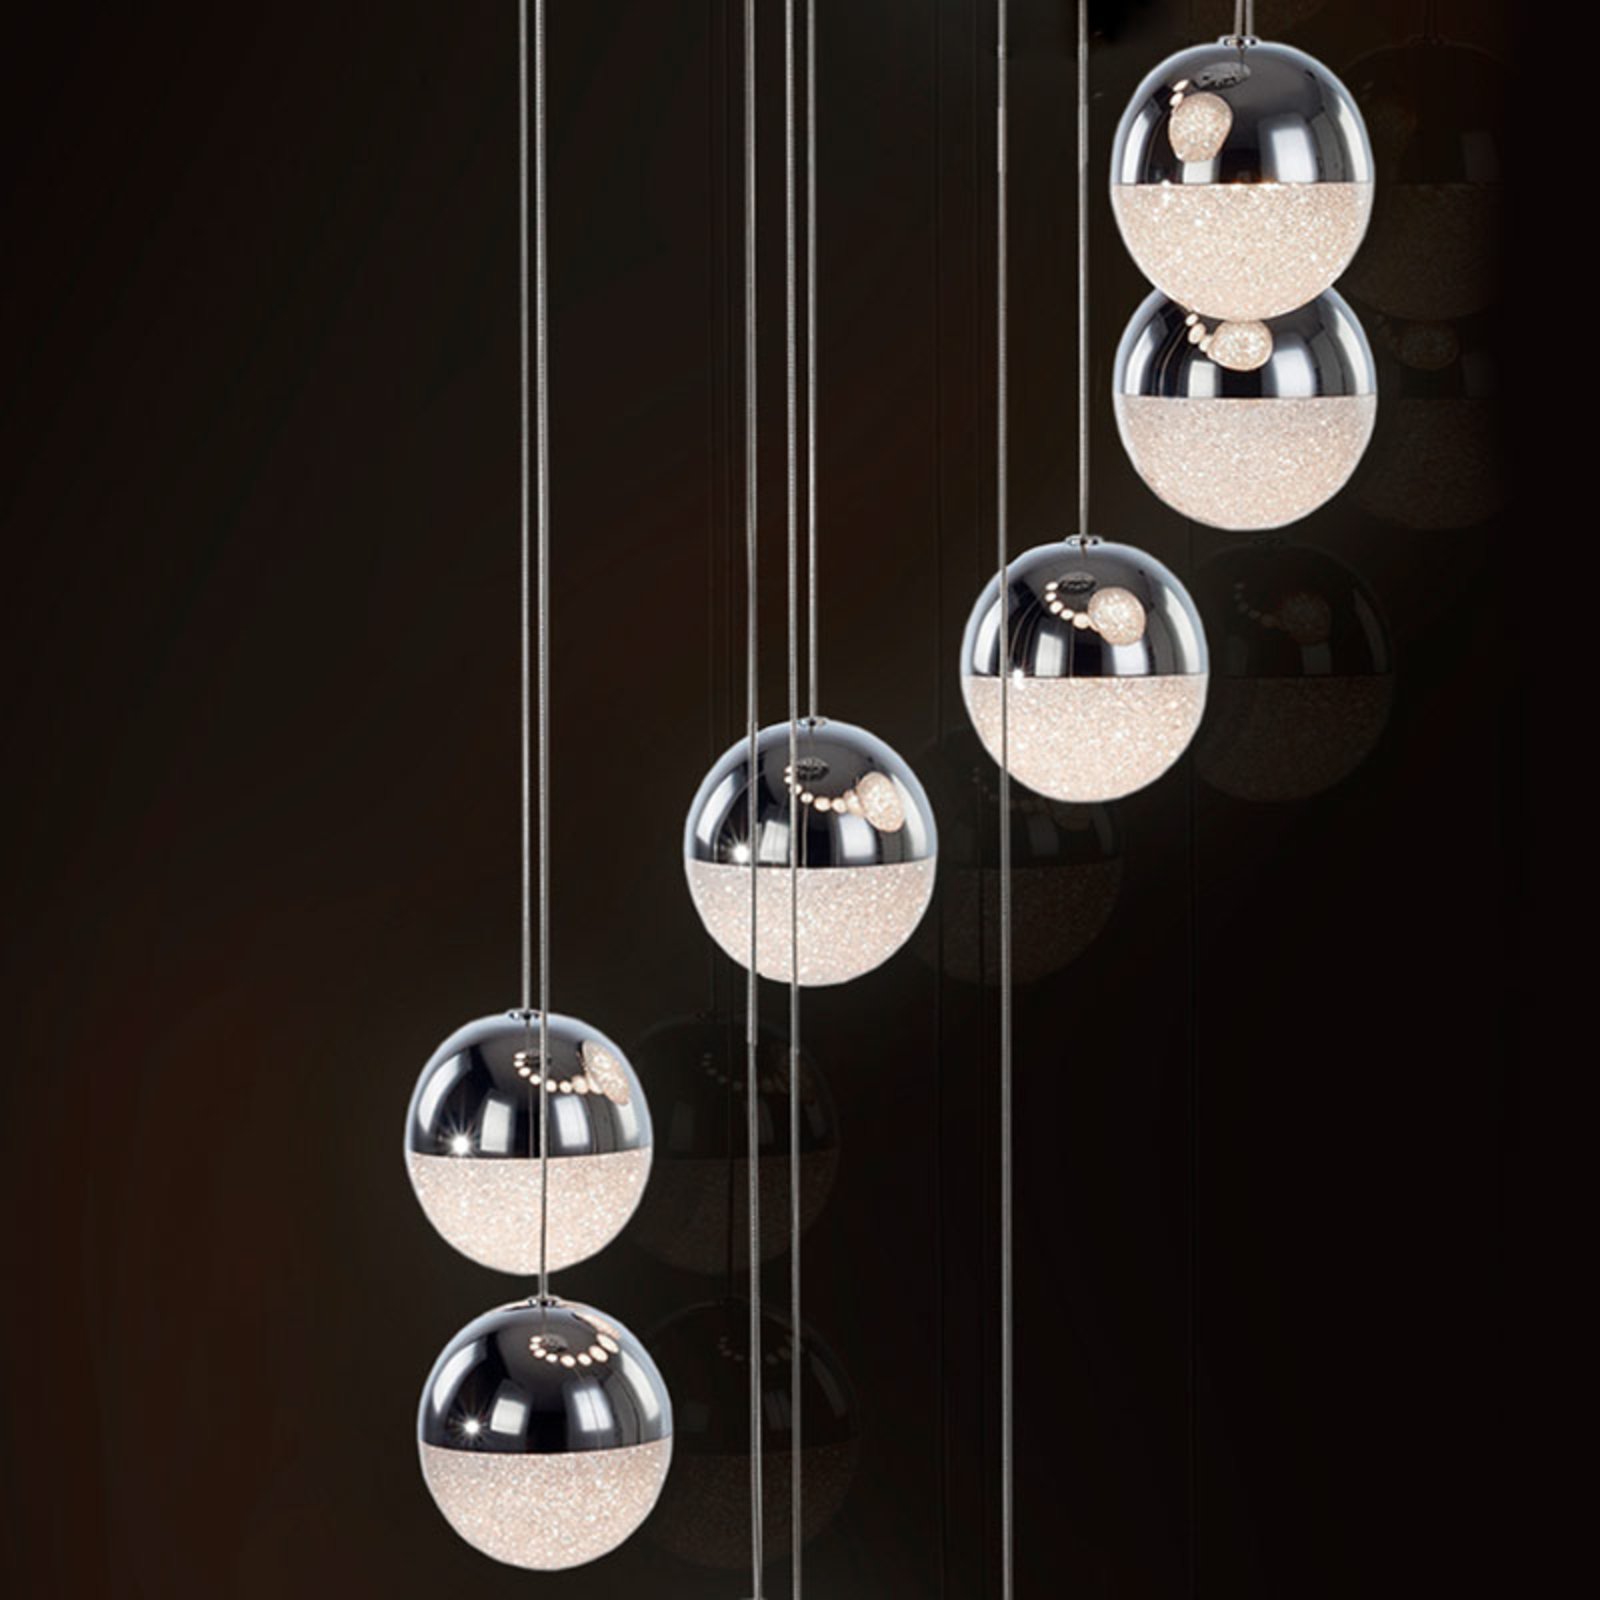 LED hanglamp Sphere 14-lamps chroom app